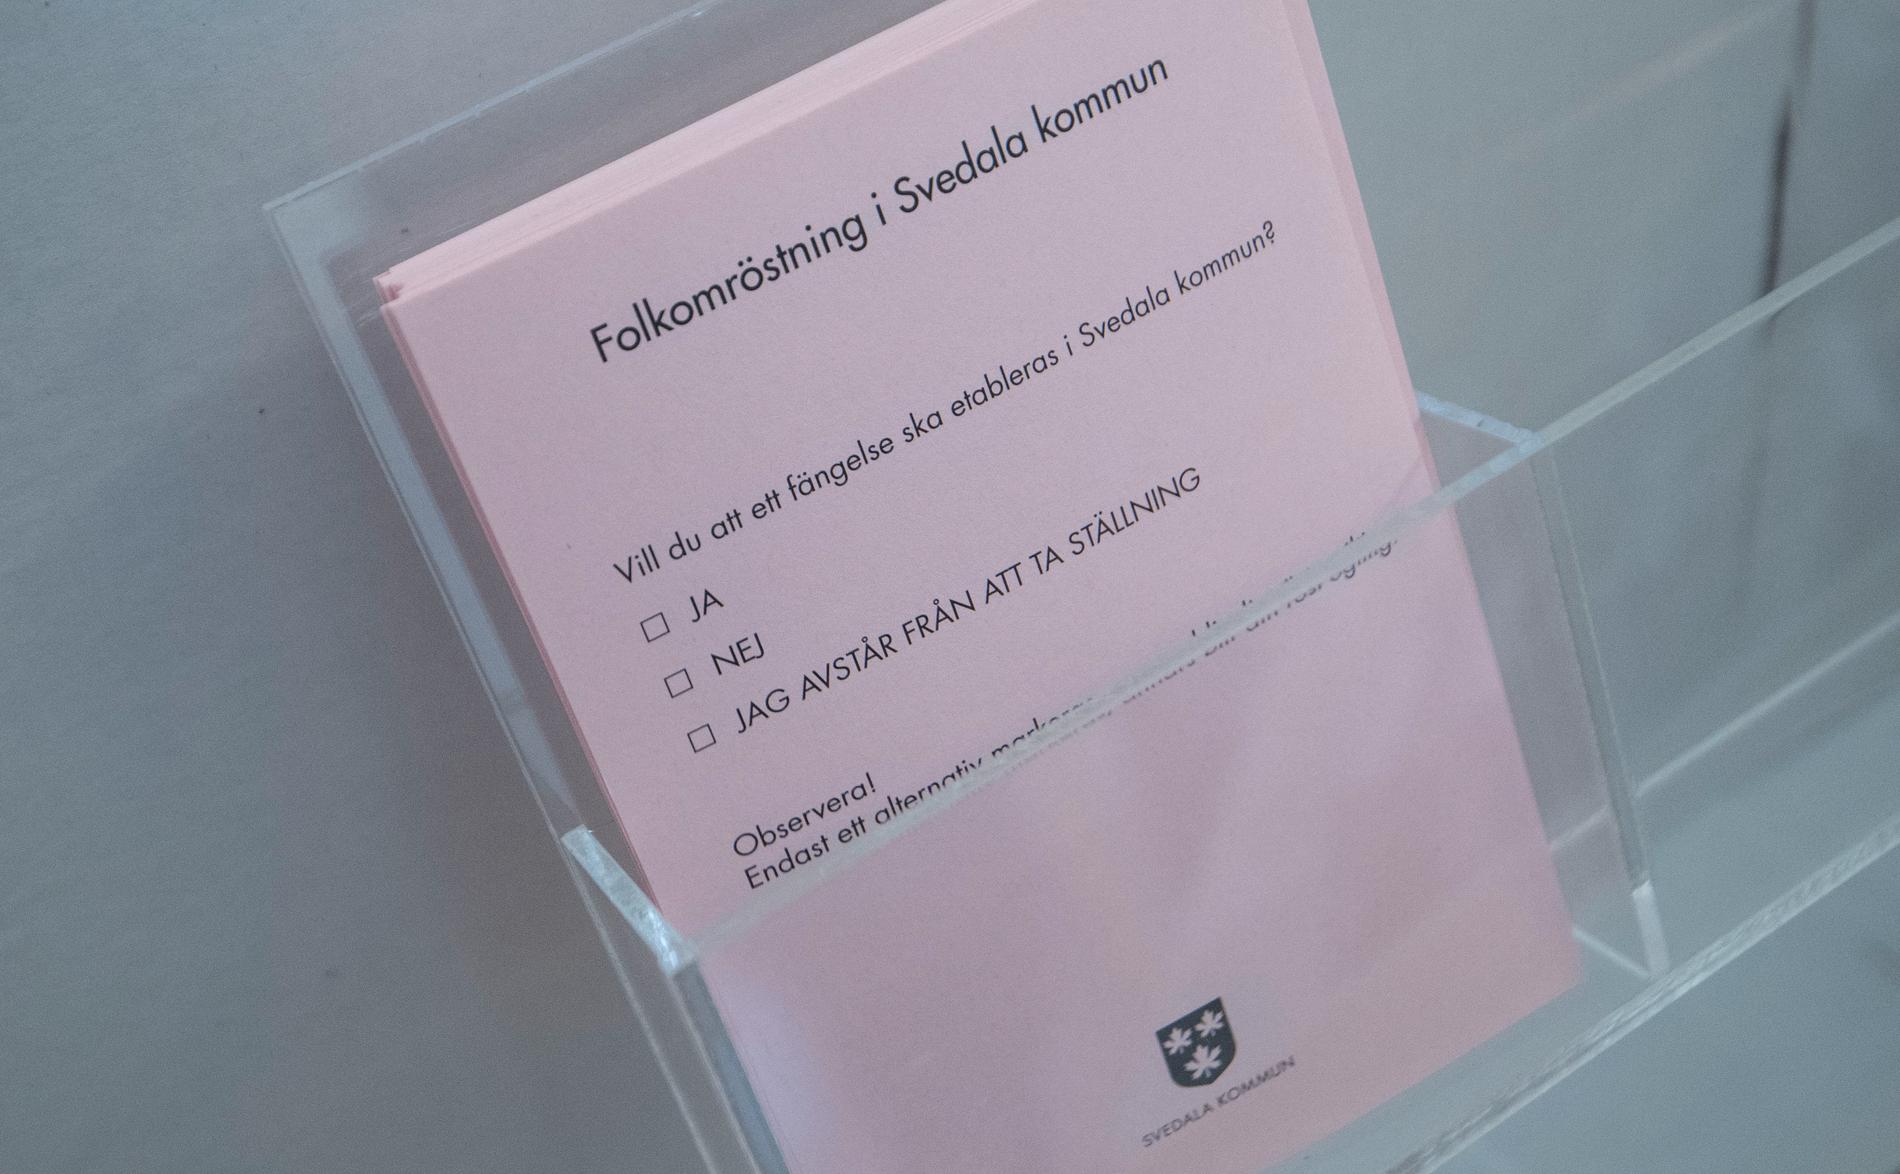 Rosa valsedel i folkomröstningen i lokalen för förtidsröstning vid Stortorget i centrala i Svedala.